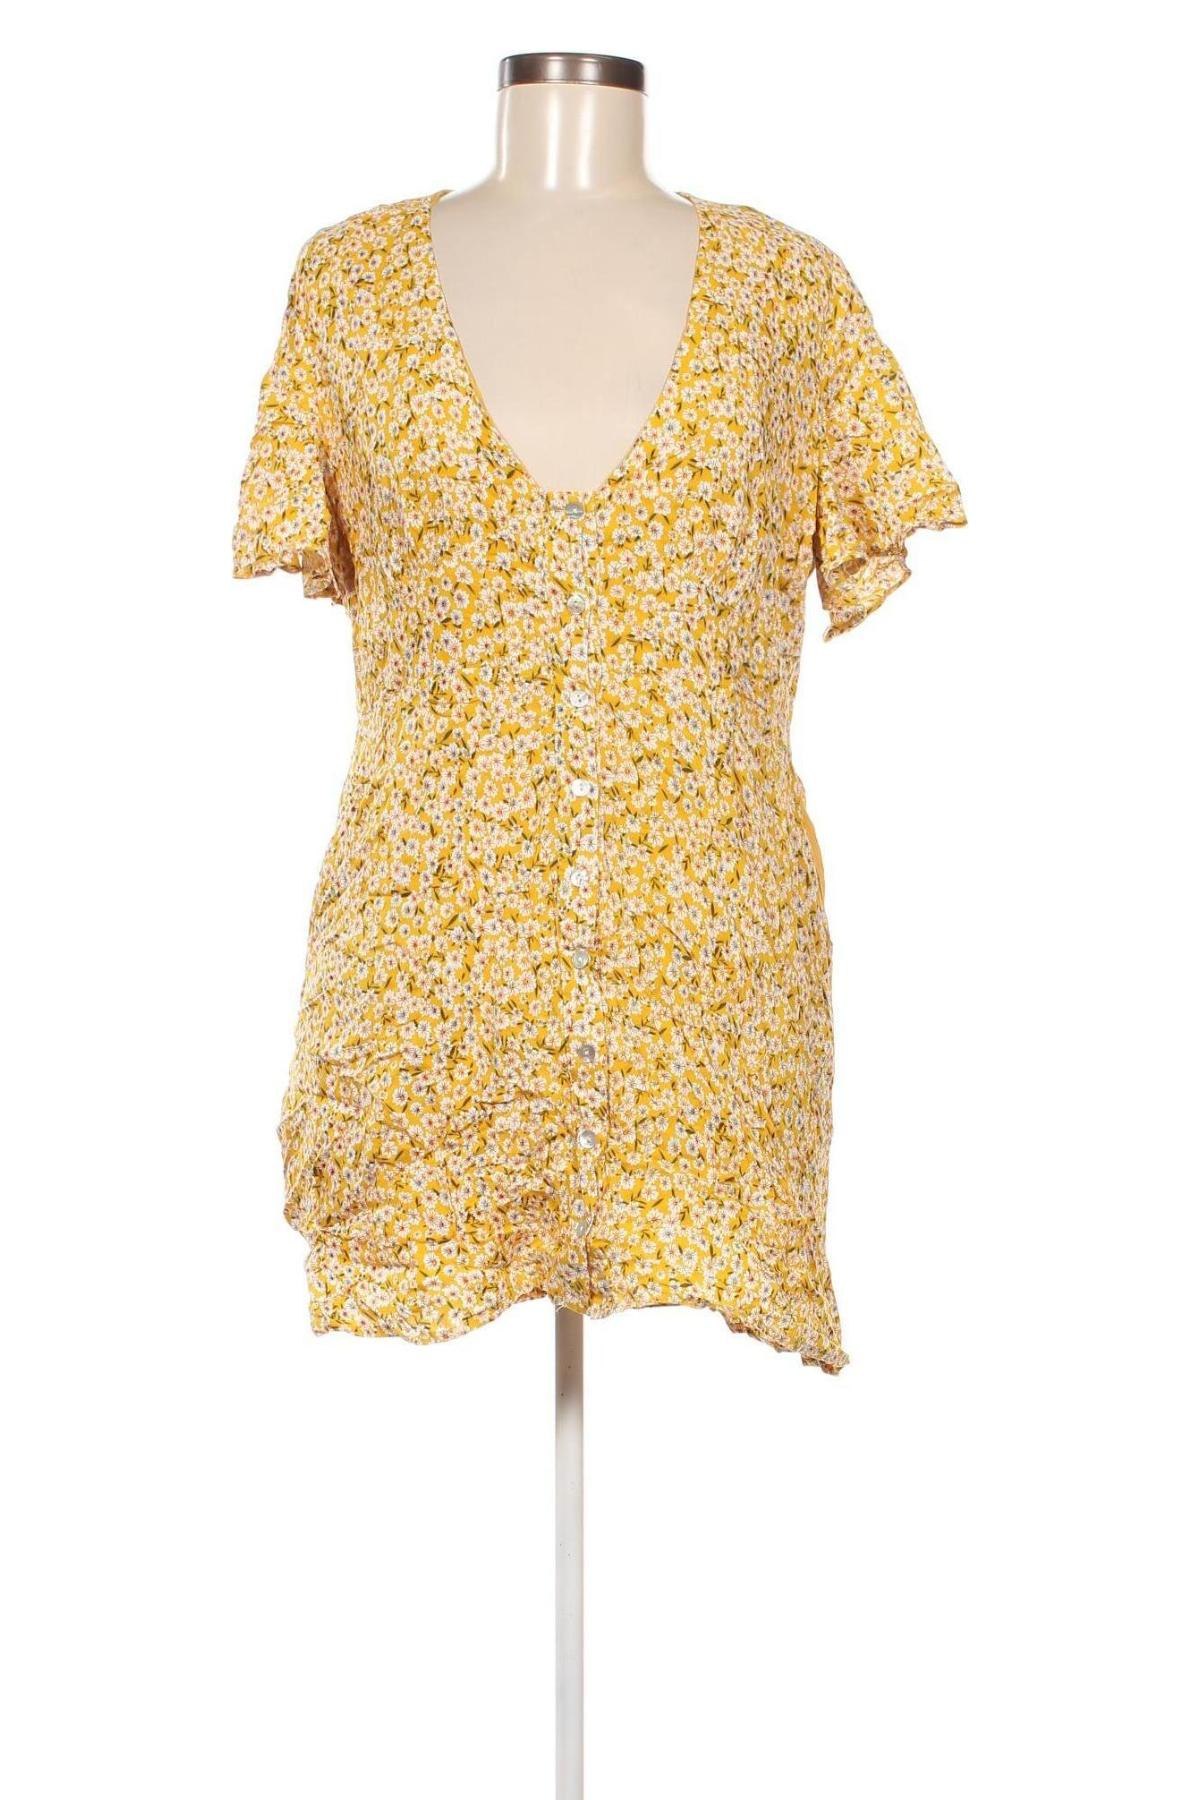 Φόρεμα Princess Polly, Μέγεθος XL, Χρώμα Πολύχρωμο, Τιμή 13,88 €